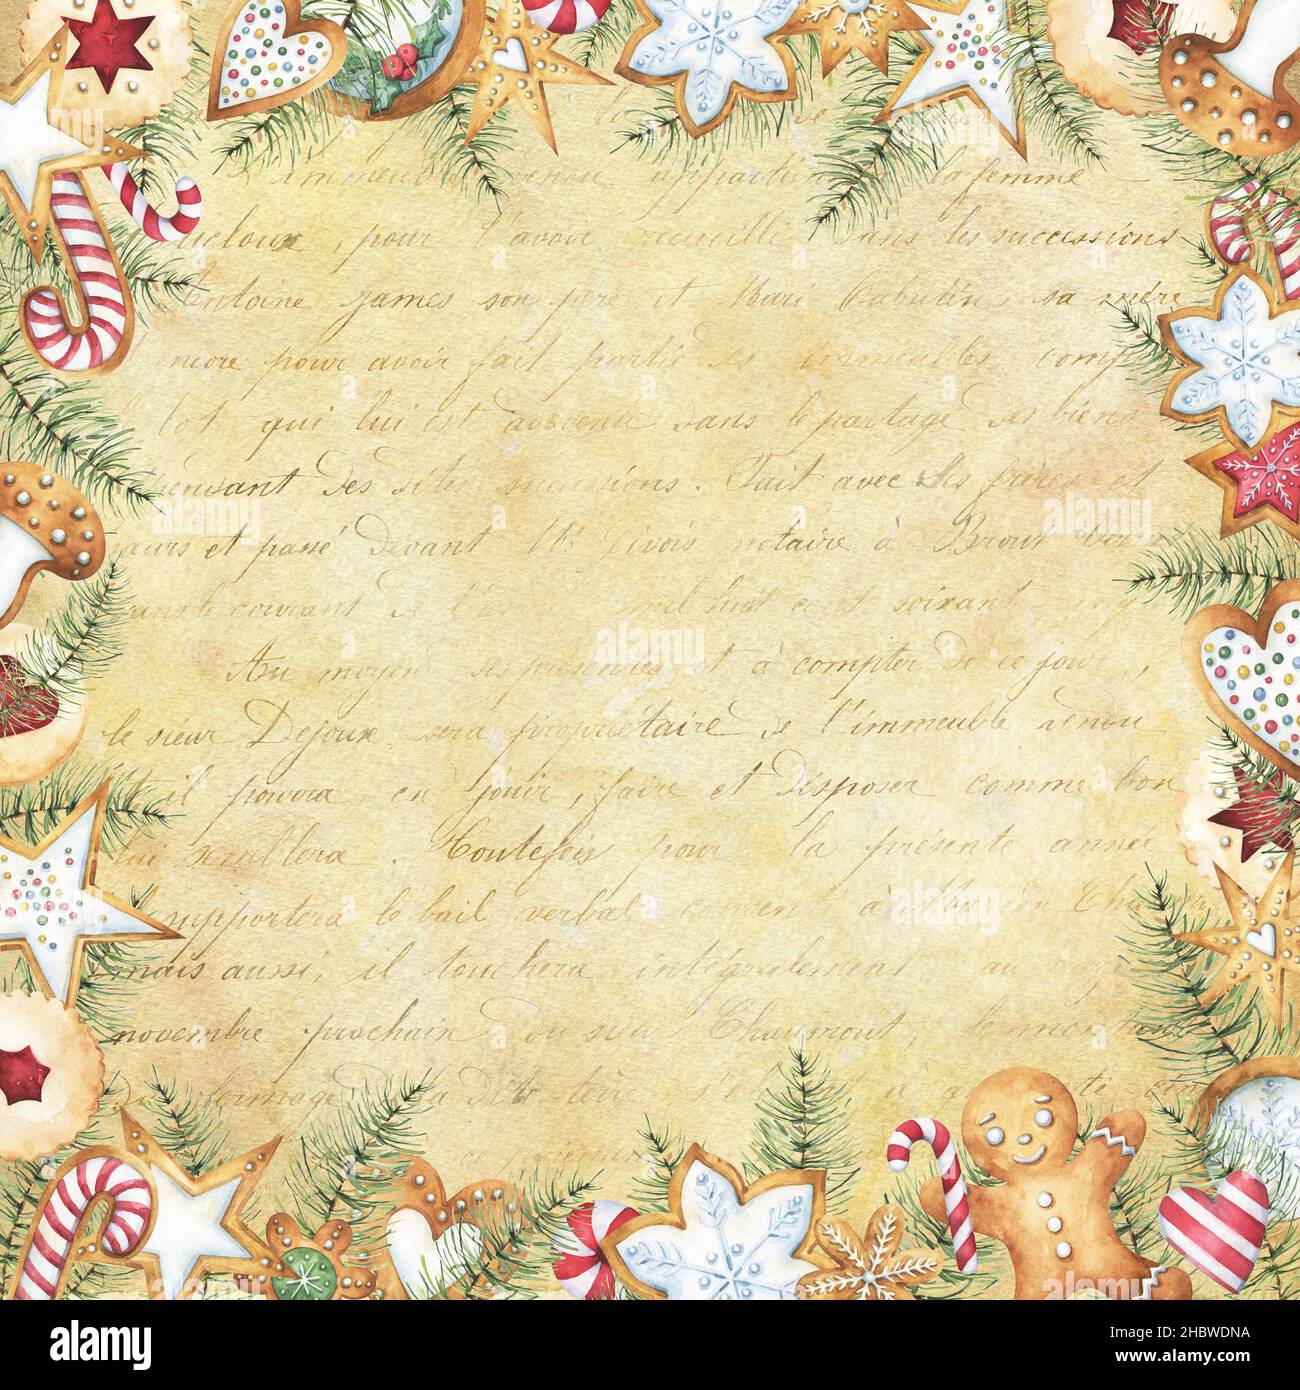 Quadratisches Weihnachts-Rahmendesign, mit braunem Vintage-Papier und dezentem Schriftzug im Hintergrund, Aquarell-Lebkuchenklipsen, Kiefer-Ästen-Bordüren Stockfoto